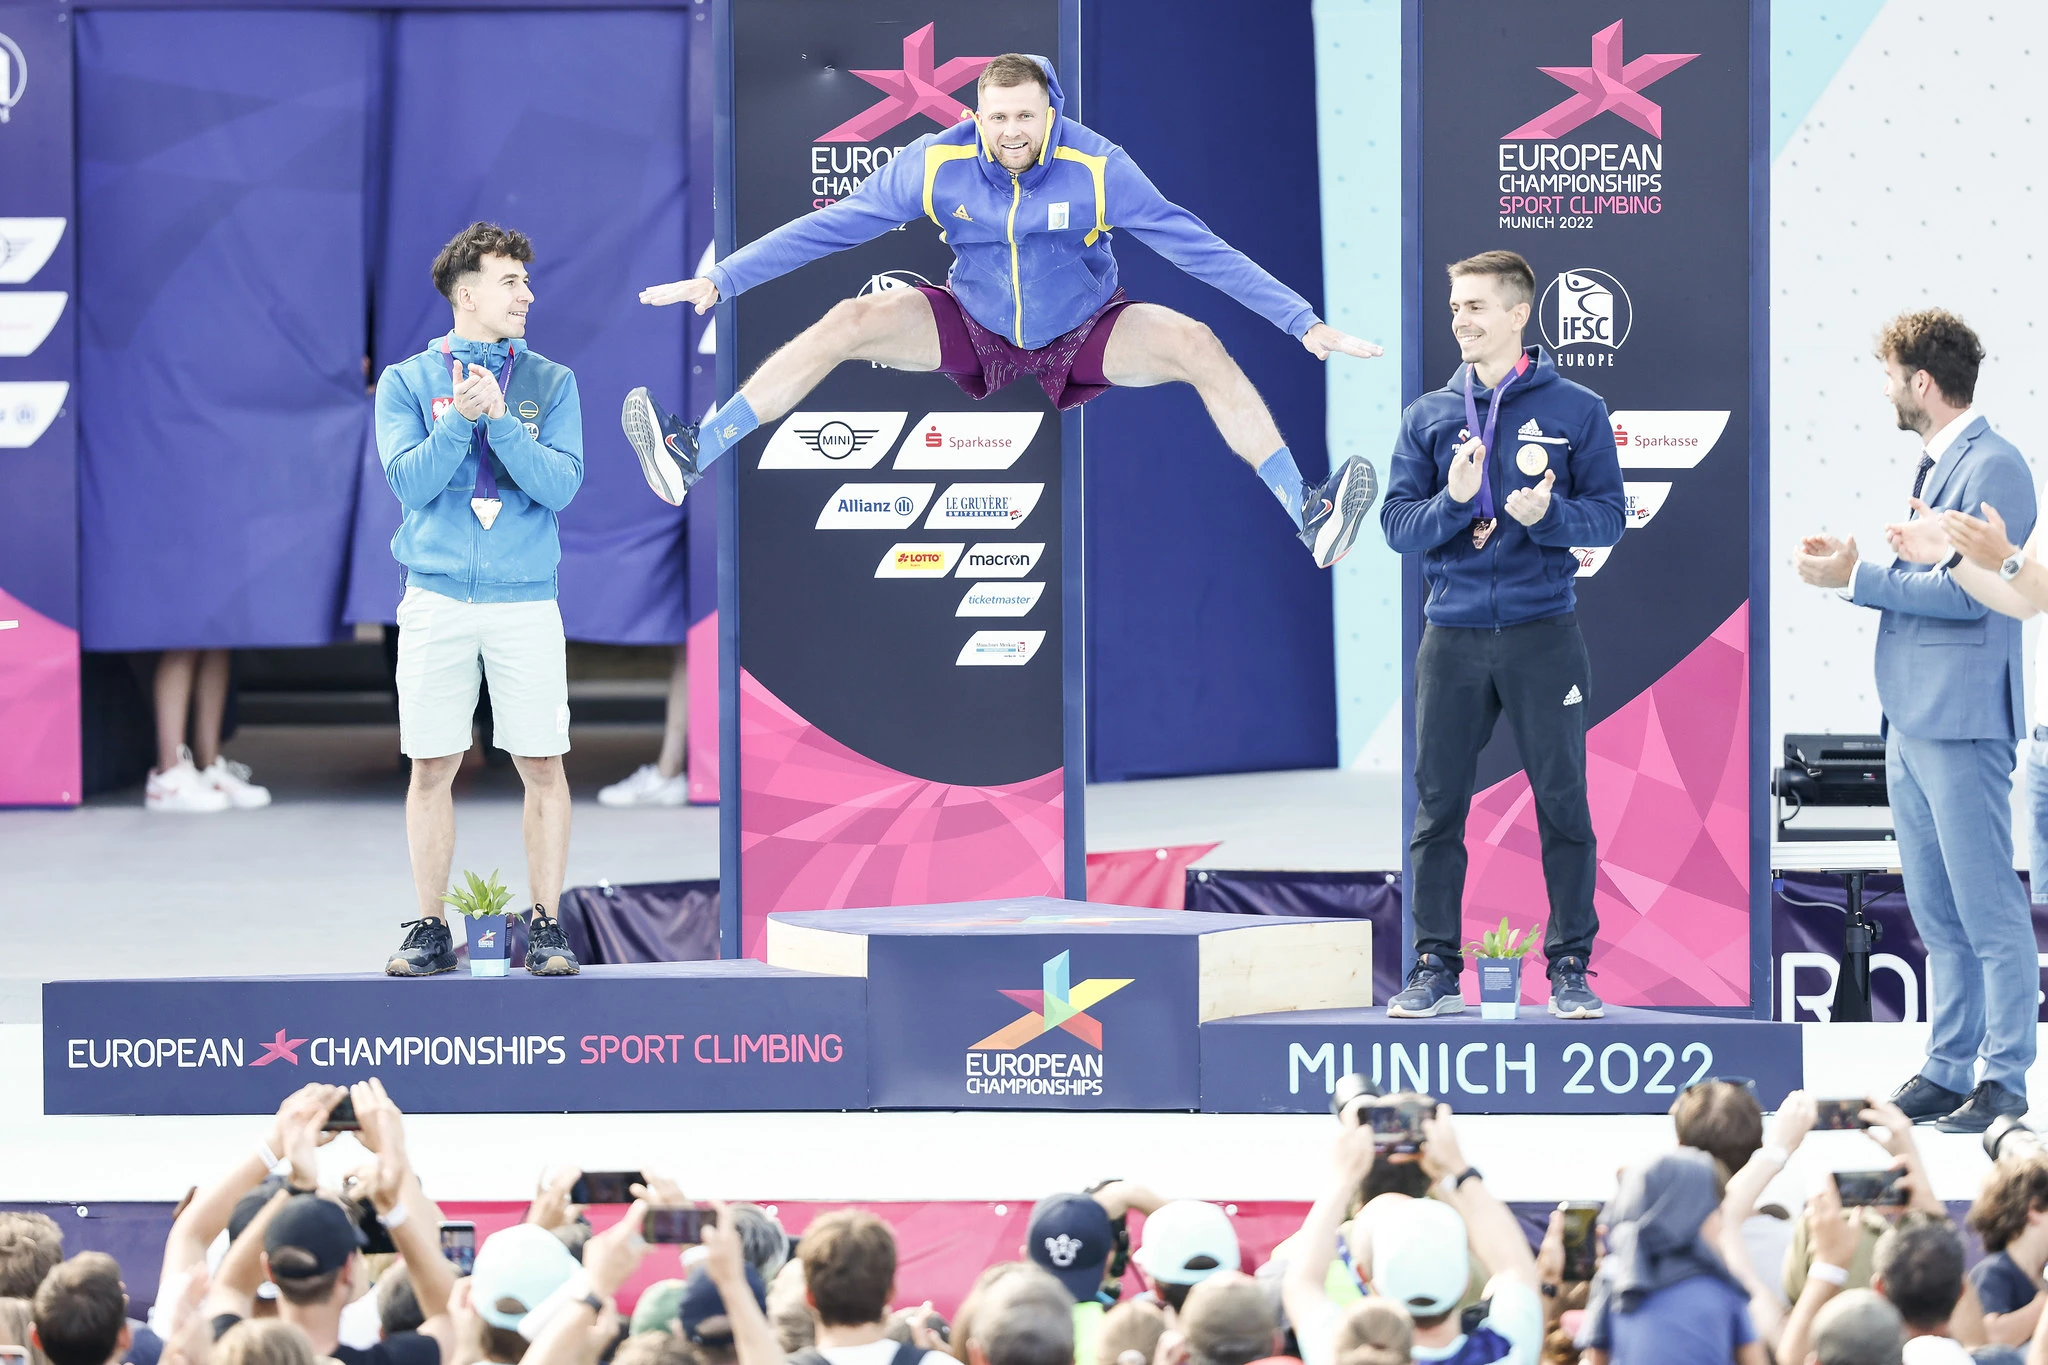 Даниїл Болдирєв з України стрибає від радості після емоційної перемоги у швидкості в Мюнхені. Фото Dimitris Tosidis / IFSC